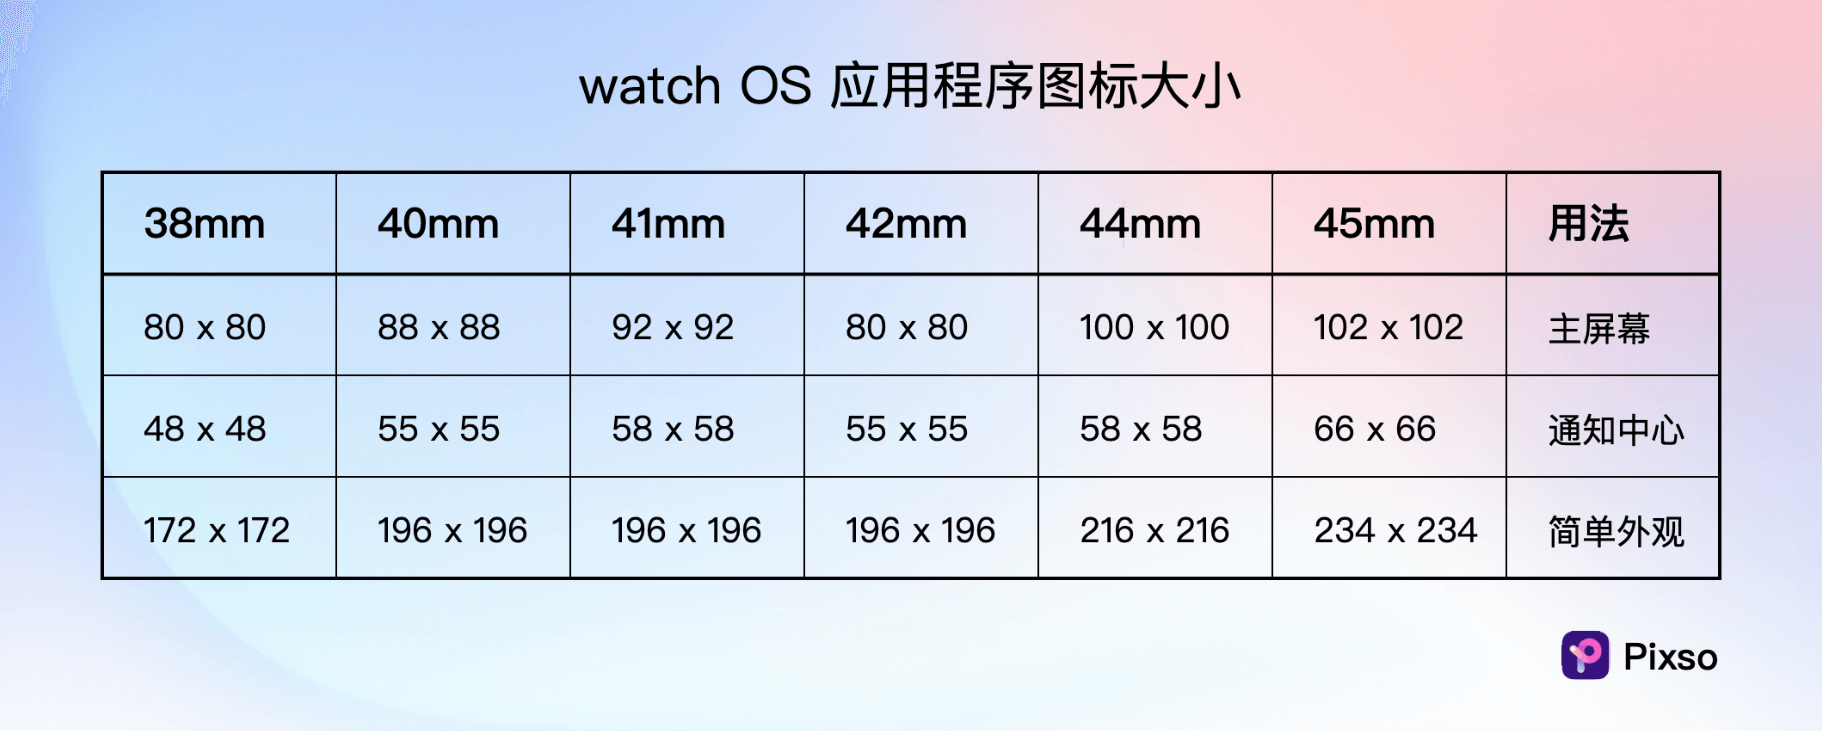 watch OS 应用程序app图标